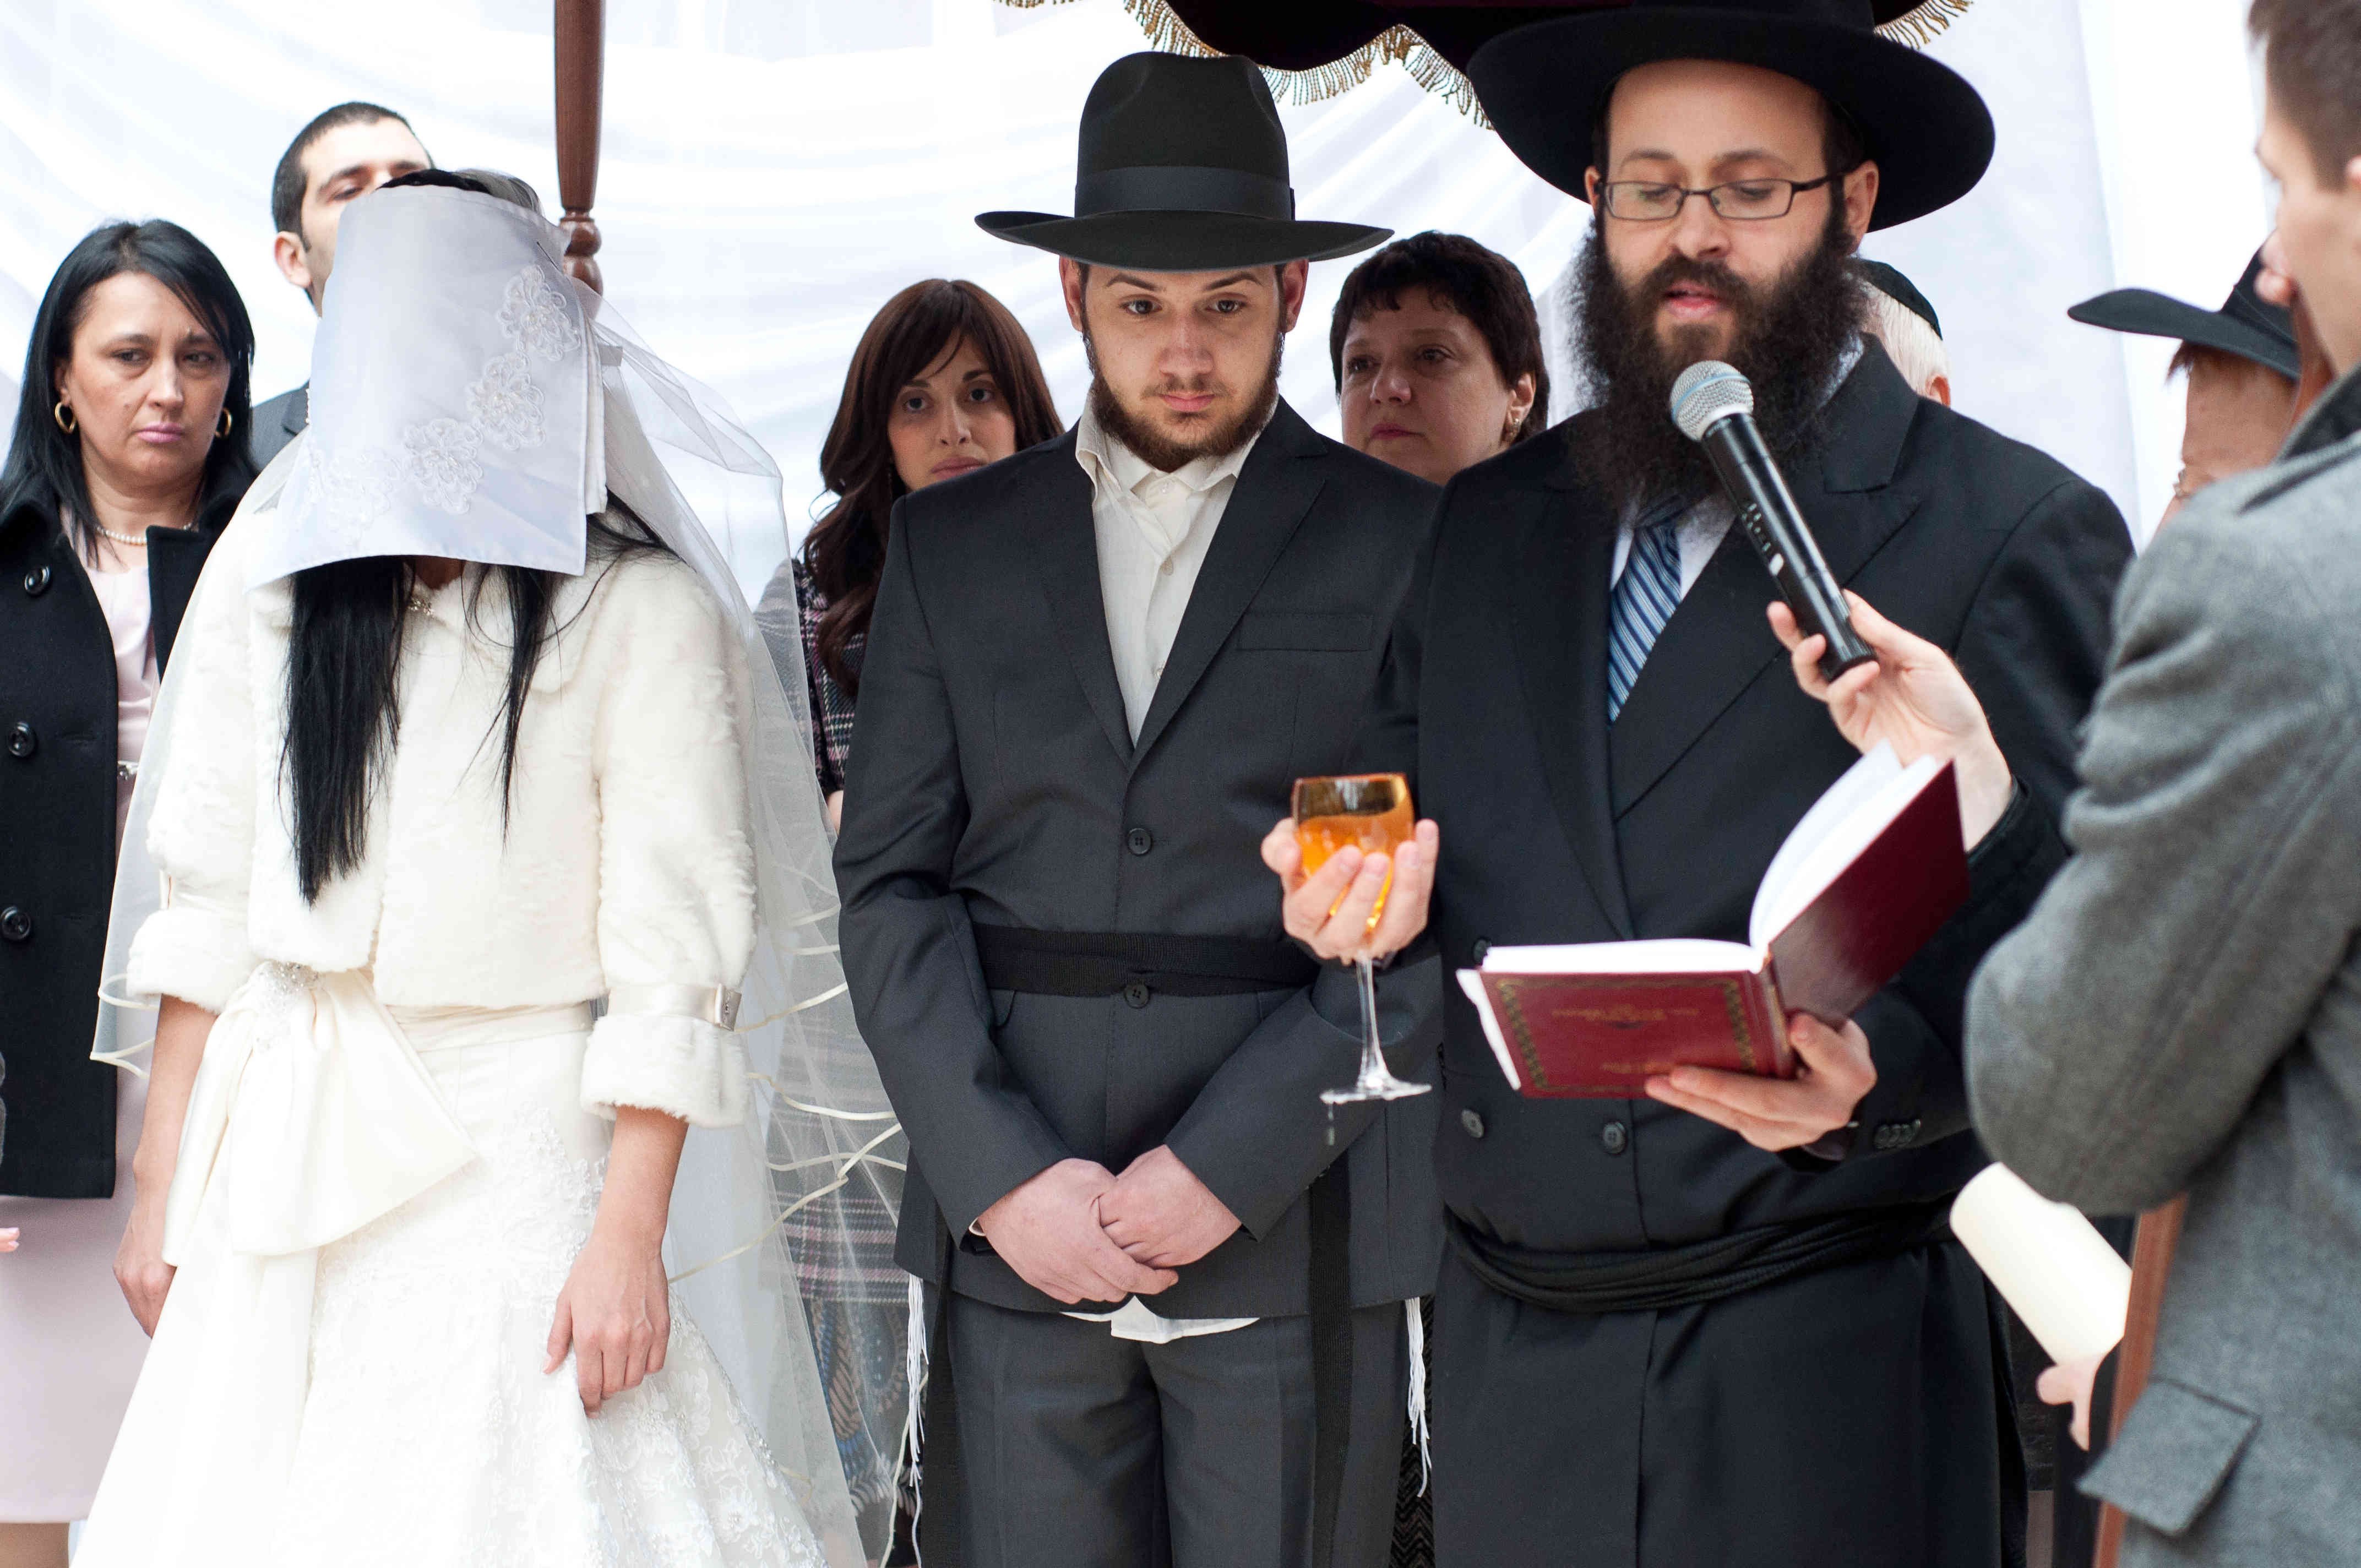 Еврейские села. Ортодоксальная Еврейская свадьба. Еврейская свадьба под хупой. Одежда ортодоксов в Израиле.